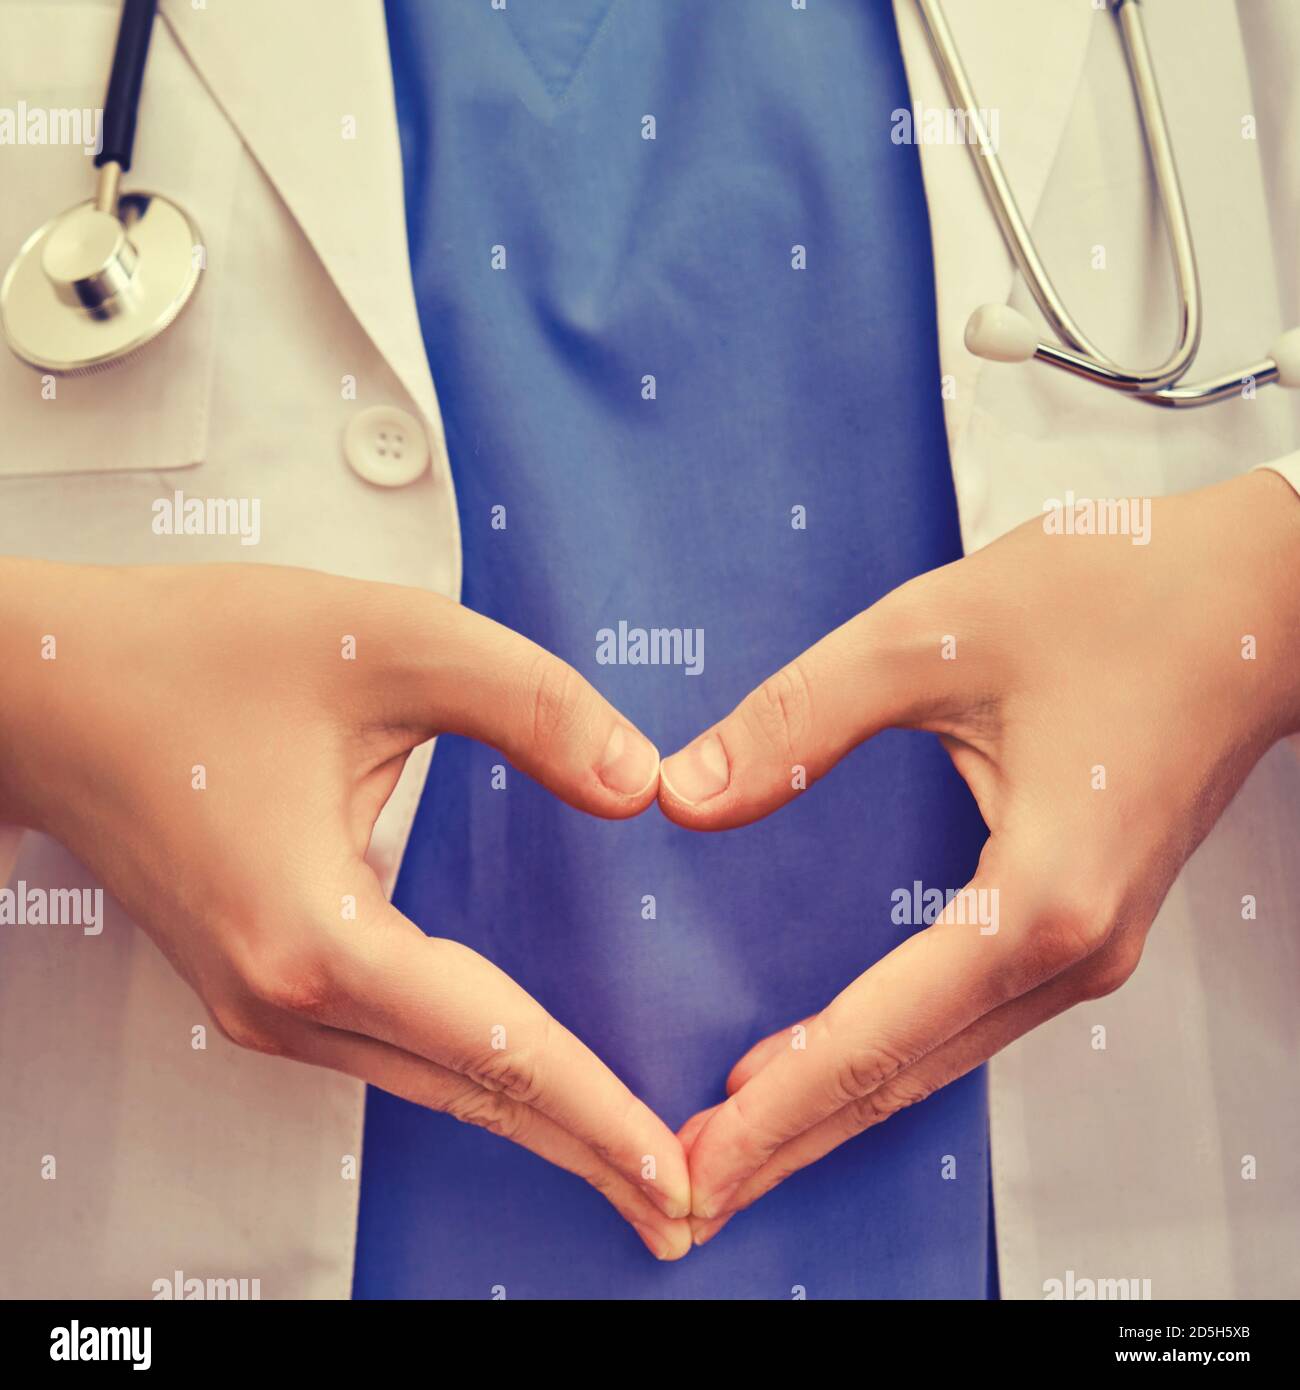 Infermiere mostra un gesto a forma di cuore, primo piano. Dottore ha piegato le dita sotto forma di cuore, sfondo blu Foto Stock